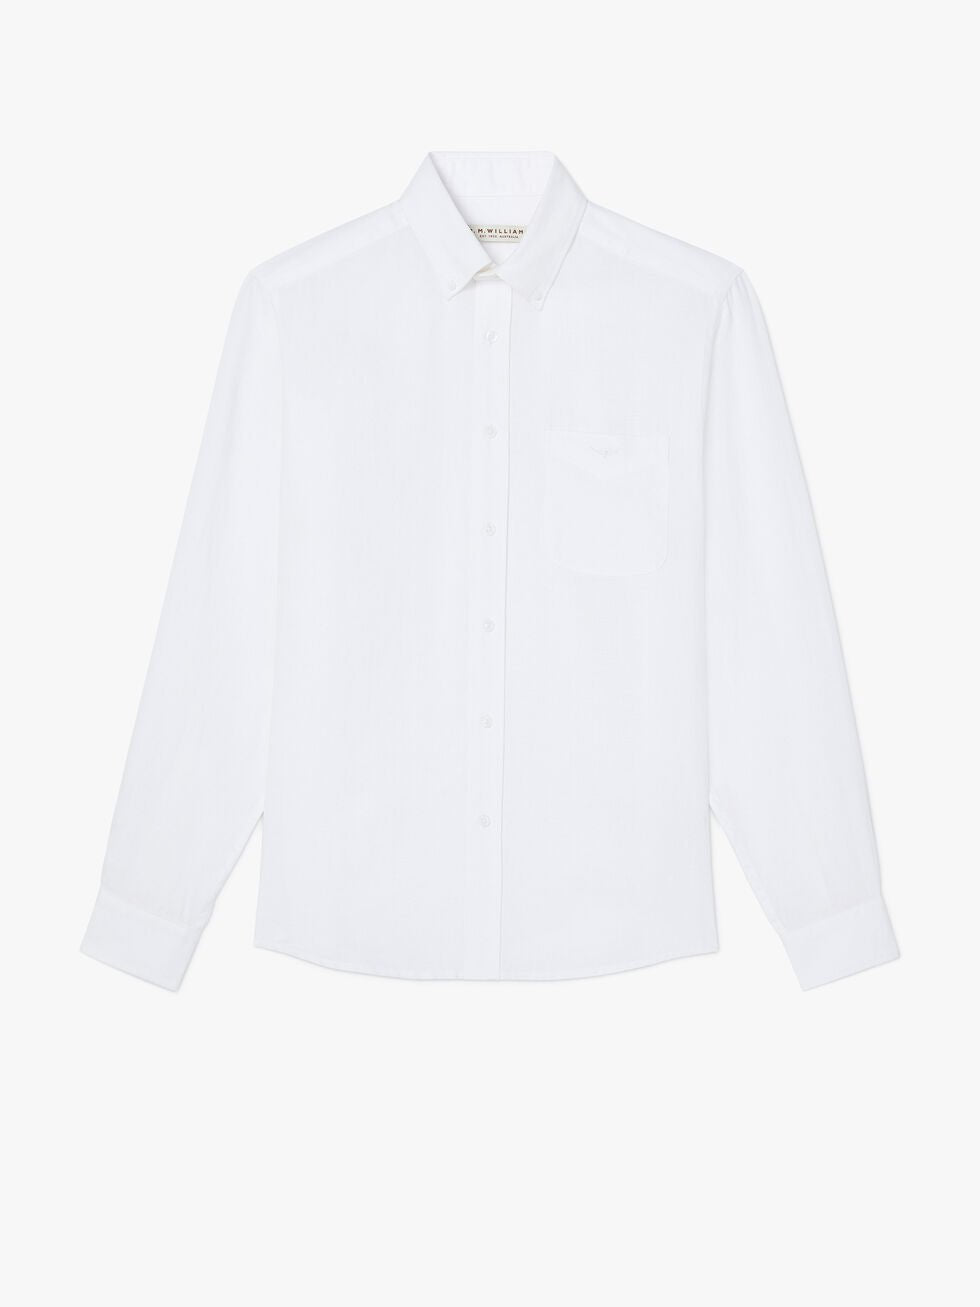 RMW S22 Collins BD Linen Shirt - Thomson's Suits Ltd - White - S - 53215